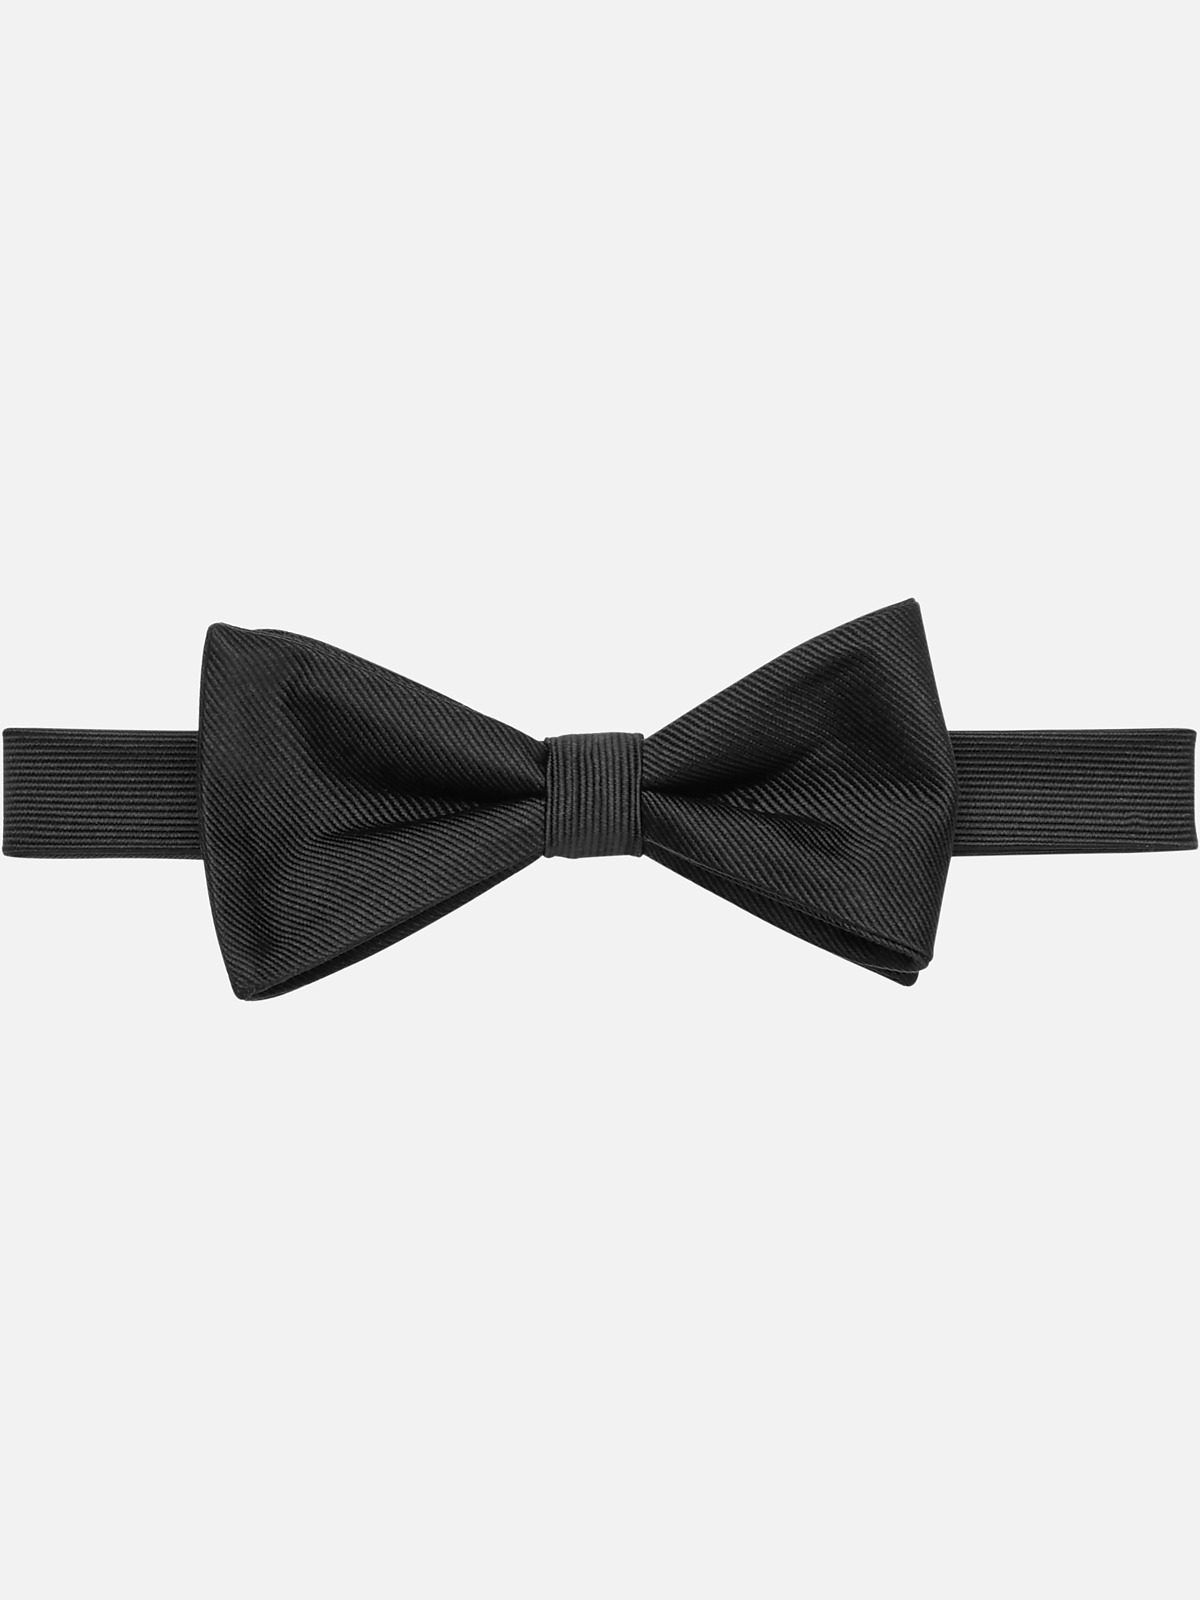 Tie Formal - Buy online